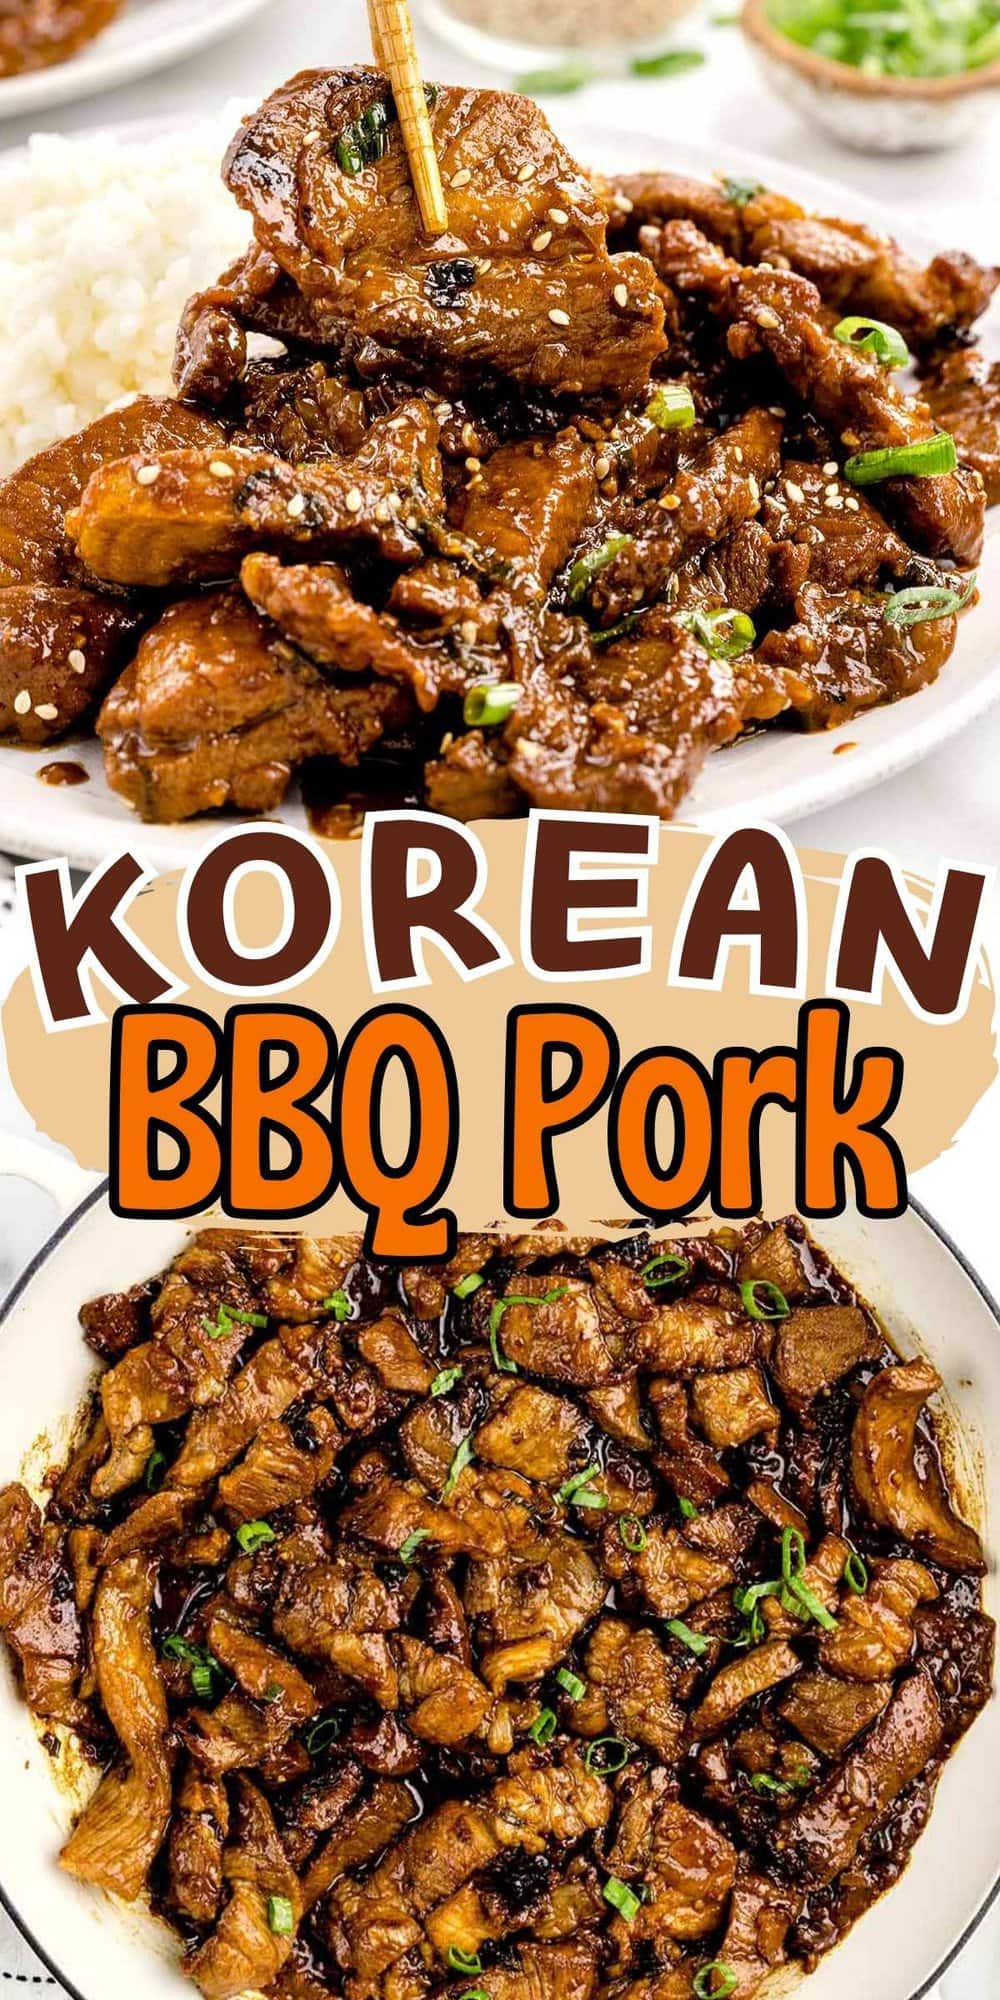 Korean BBQ Pork pinterest